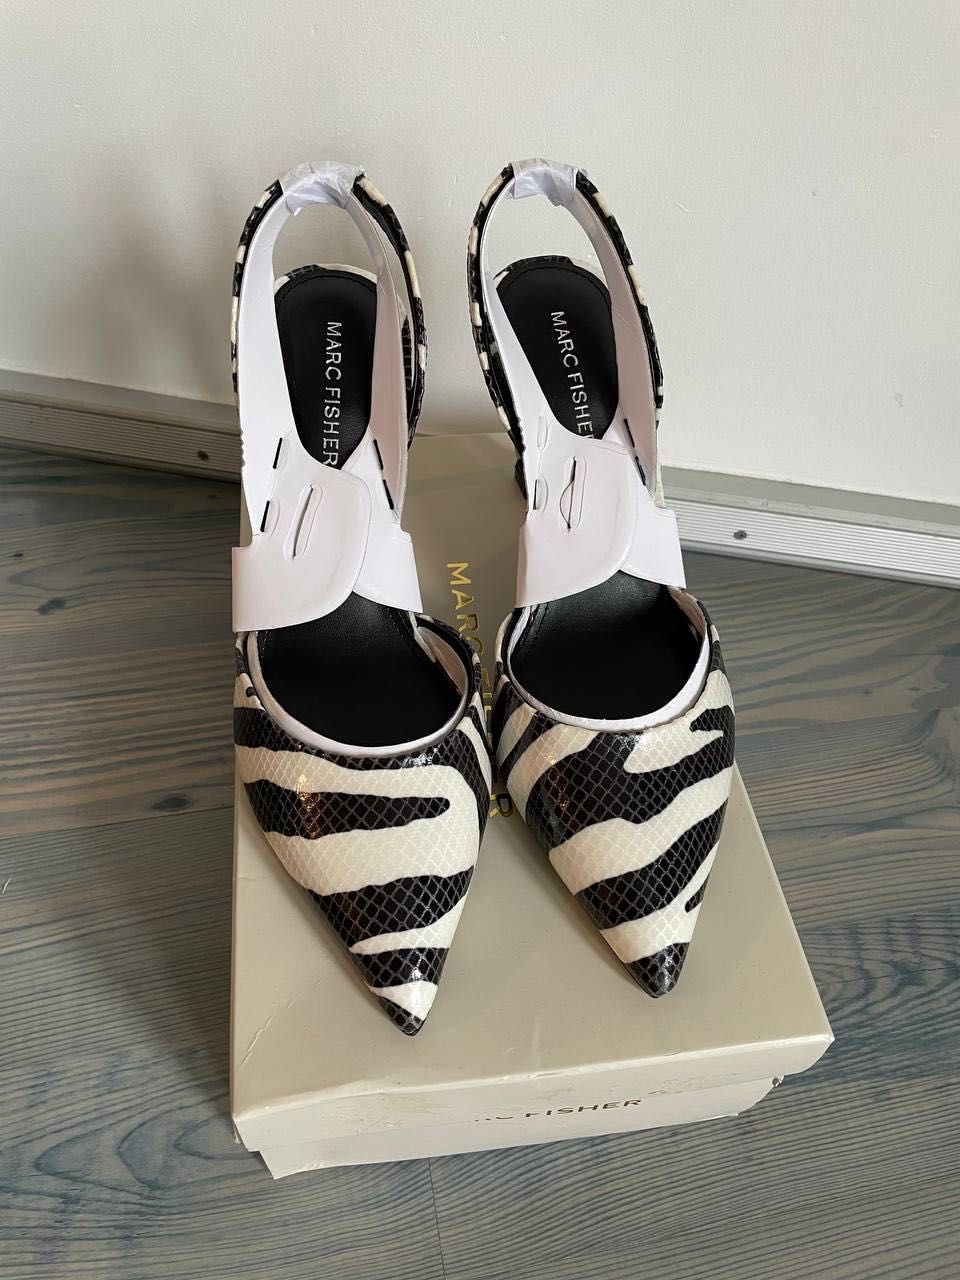 Женские туфли зебра на каблуке Marc Fisher US 8